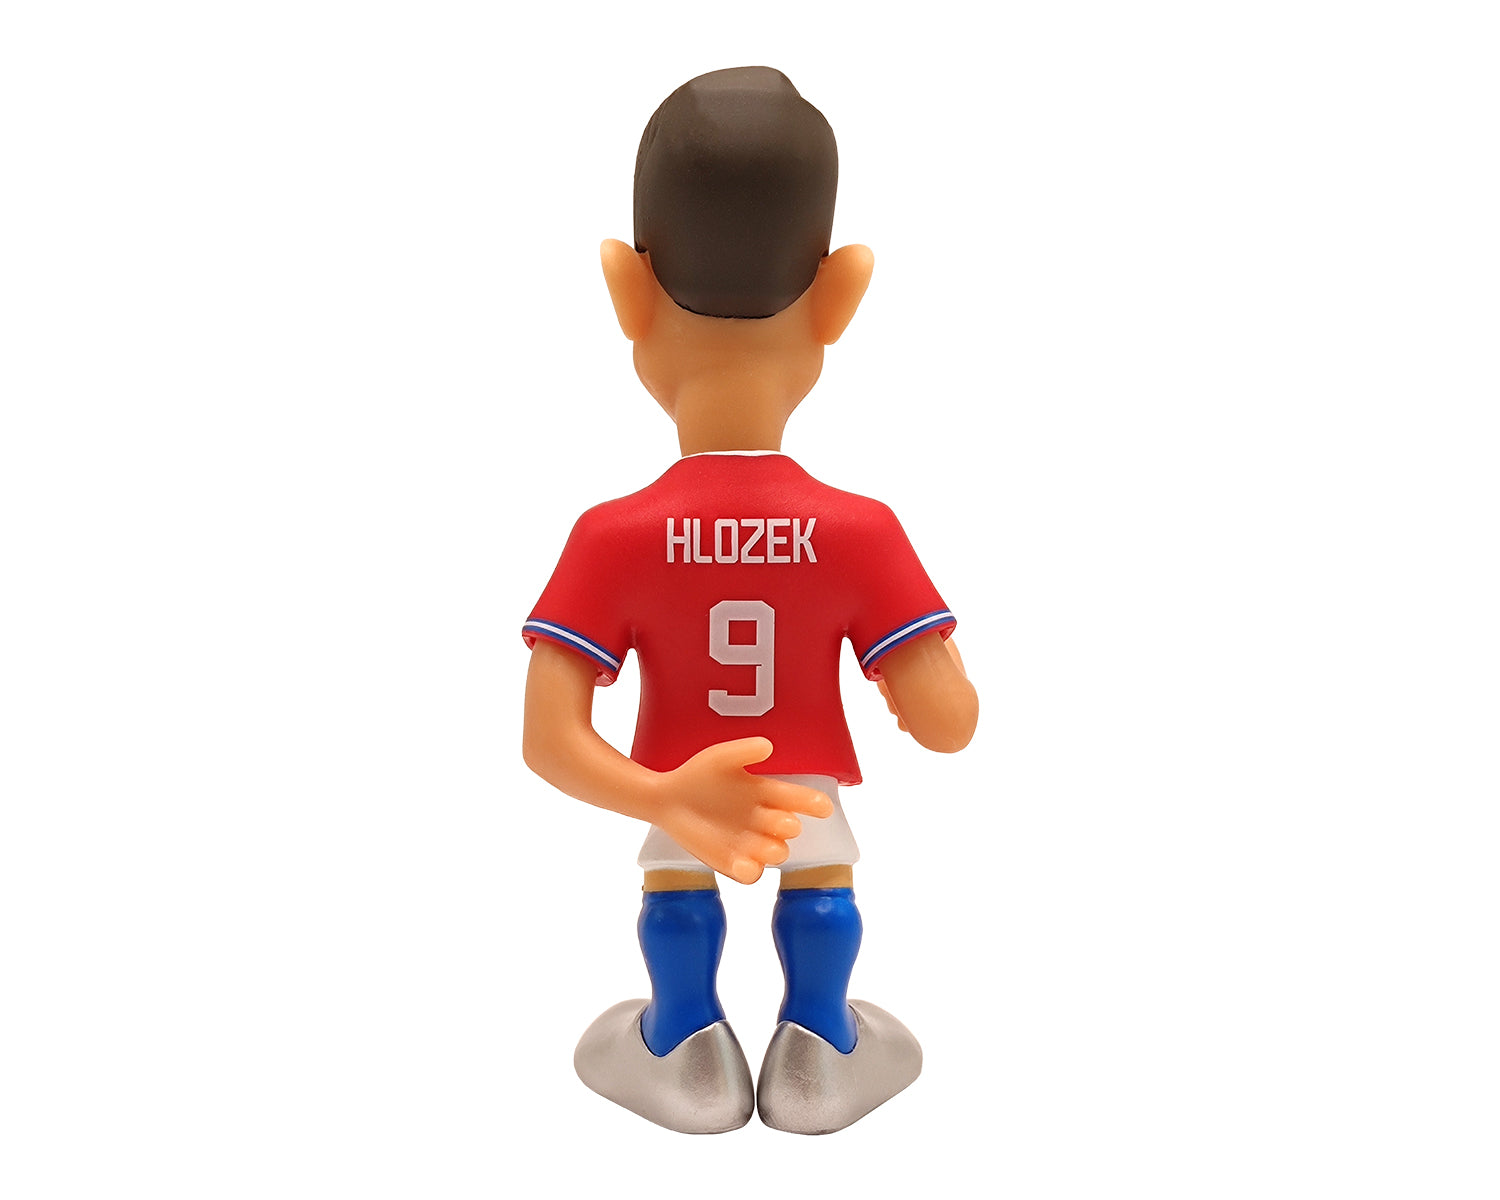 Minix -Football -CZ -HLOZEK -Figurine -12 cm